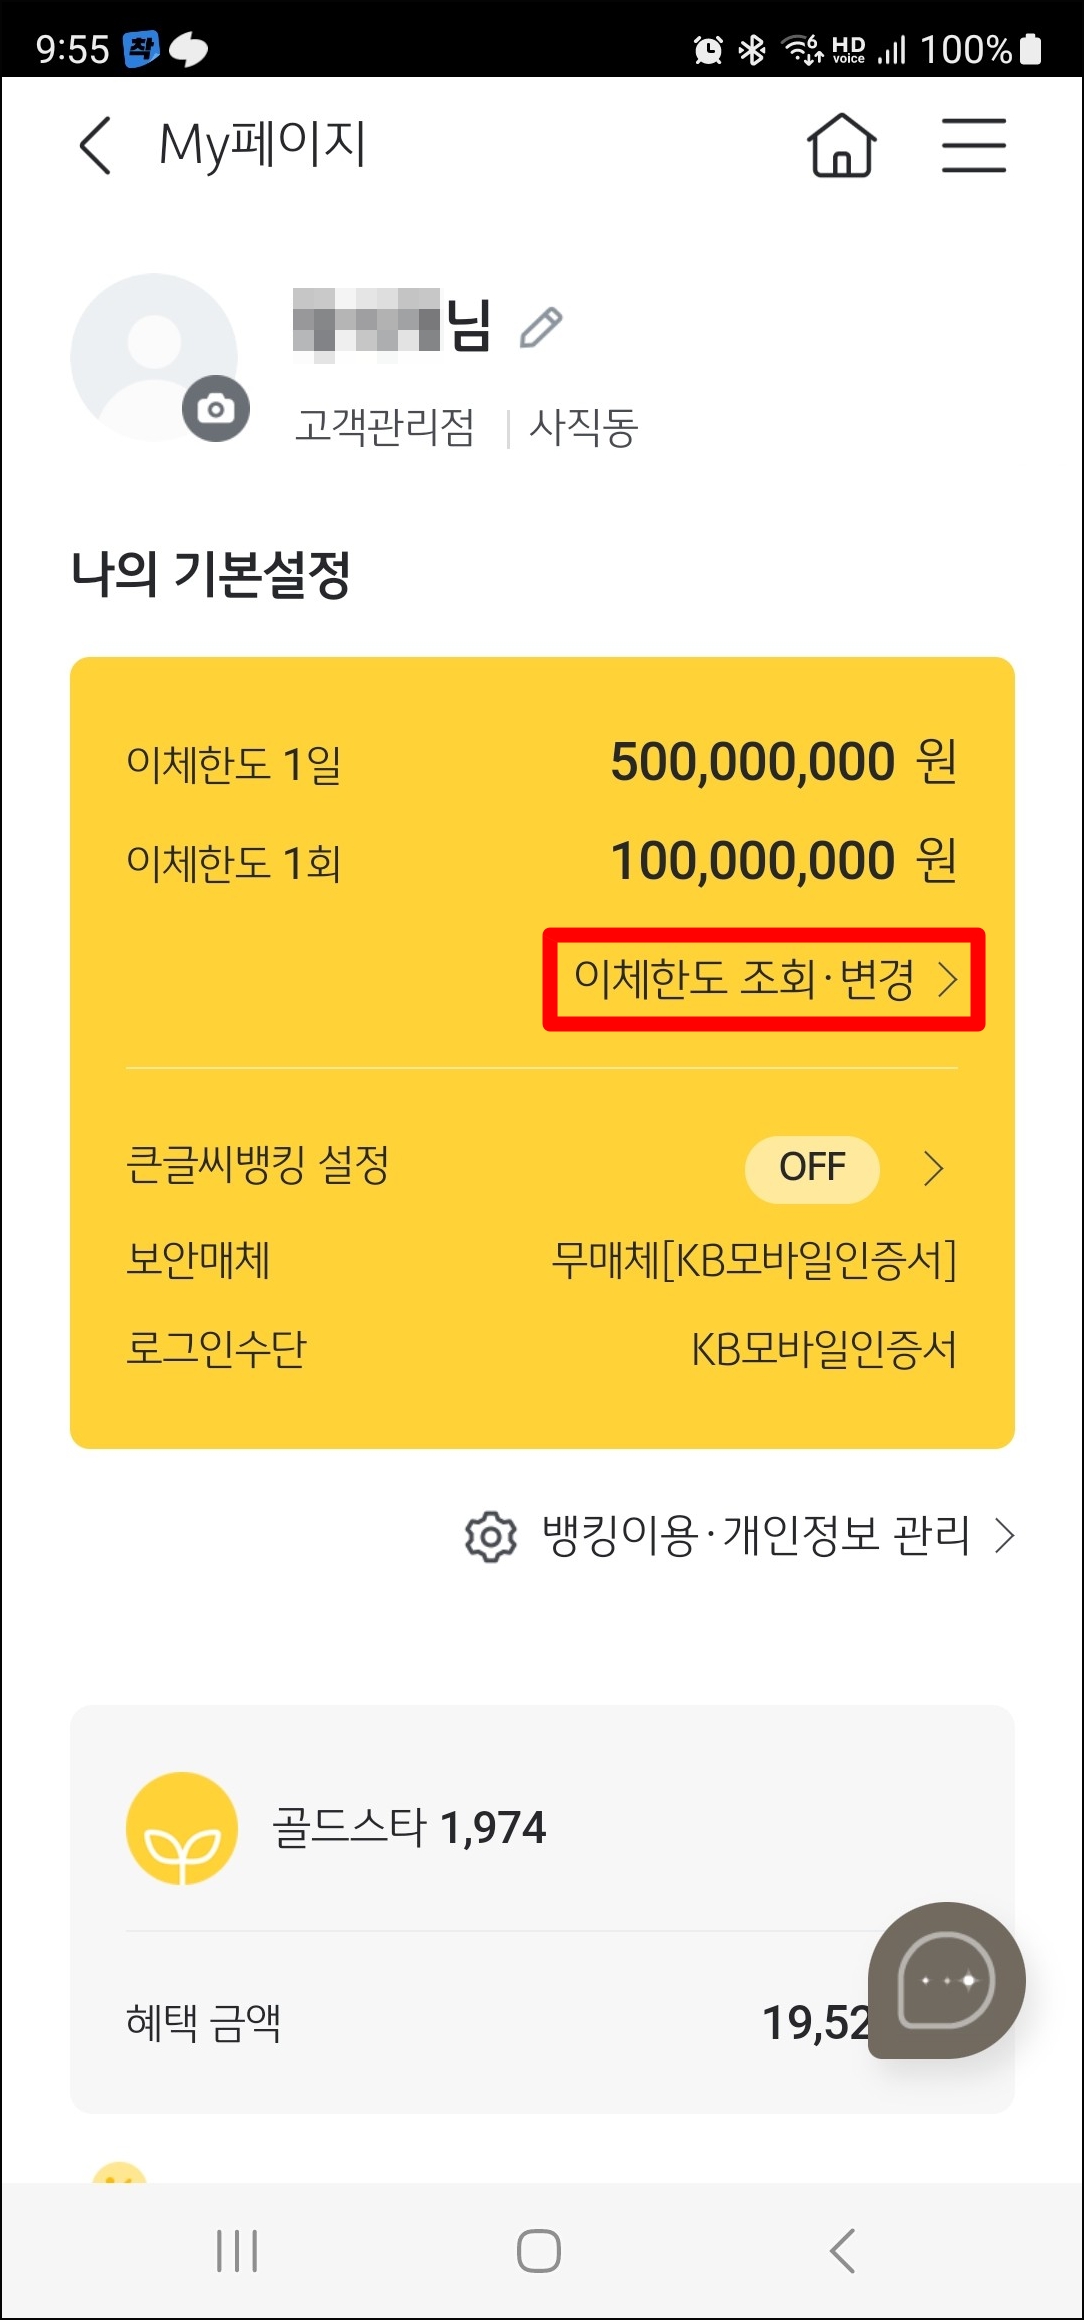 국민은행 KB스타뱅킹 1일 1회 이체한도 조회 변경 신청